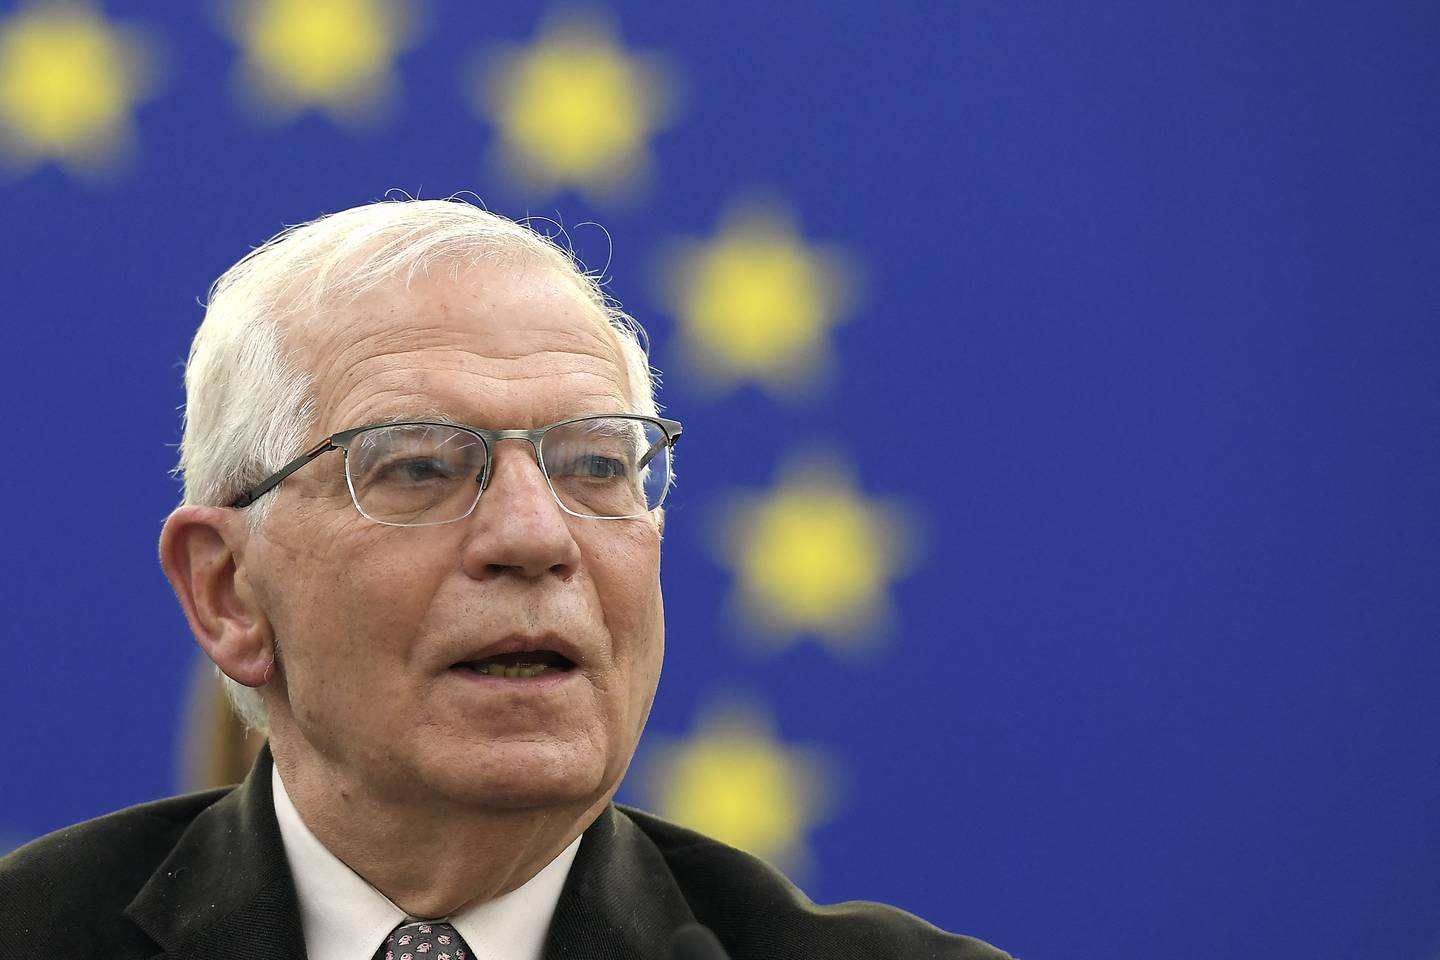 El jefe de la diplomacia de la Unión Europea, Josep Borrell, lanzó fuertes señalamientos sobre Israel. Él no entiende hacia dónde serán evacuadas el millón de palestinos que están refugiados en Rafah.